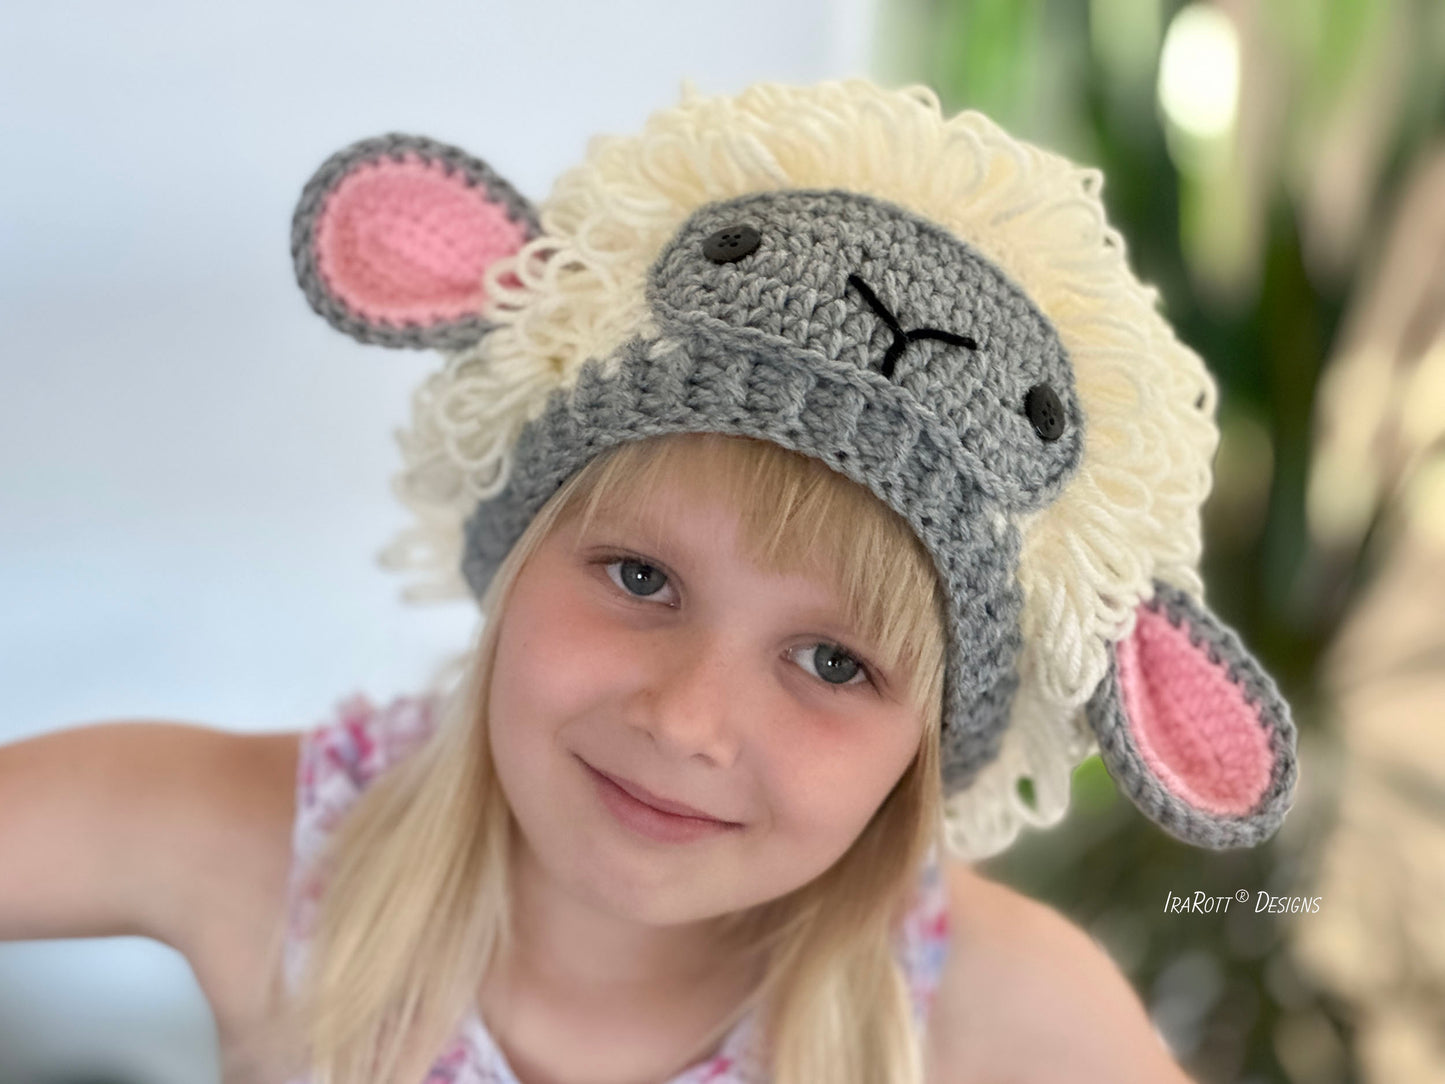 The Happy Woolly Sheep Hat Crochet Pattern